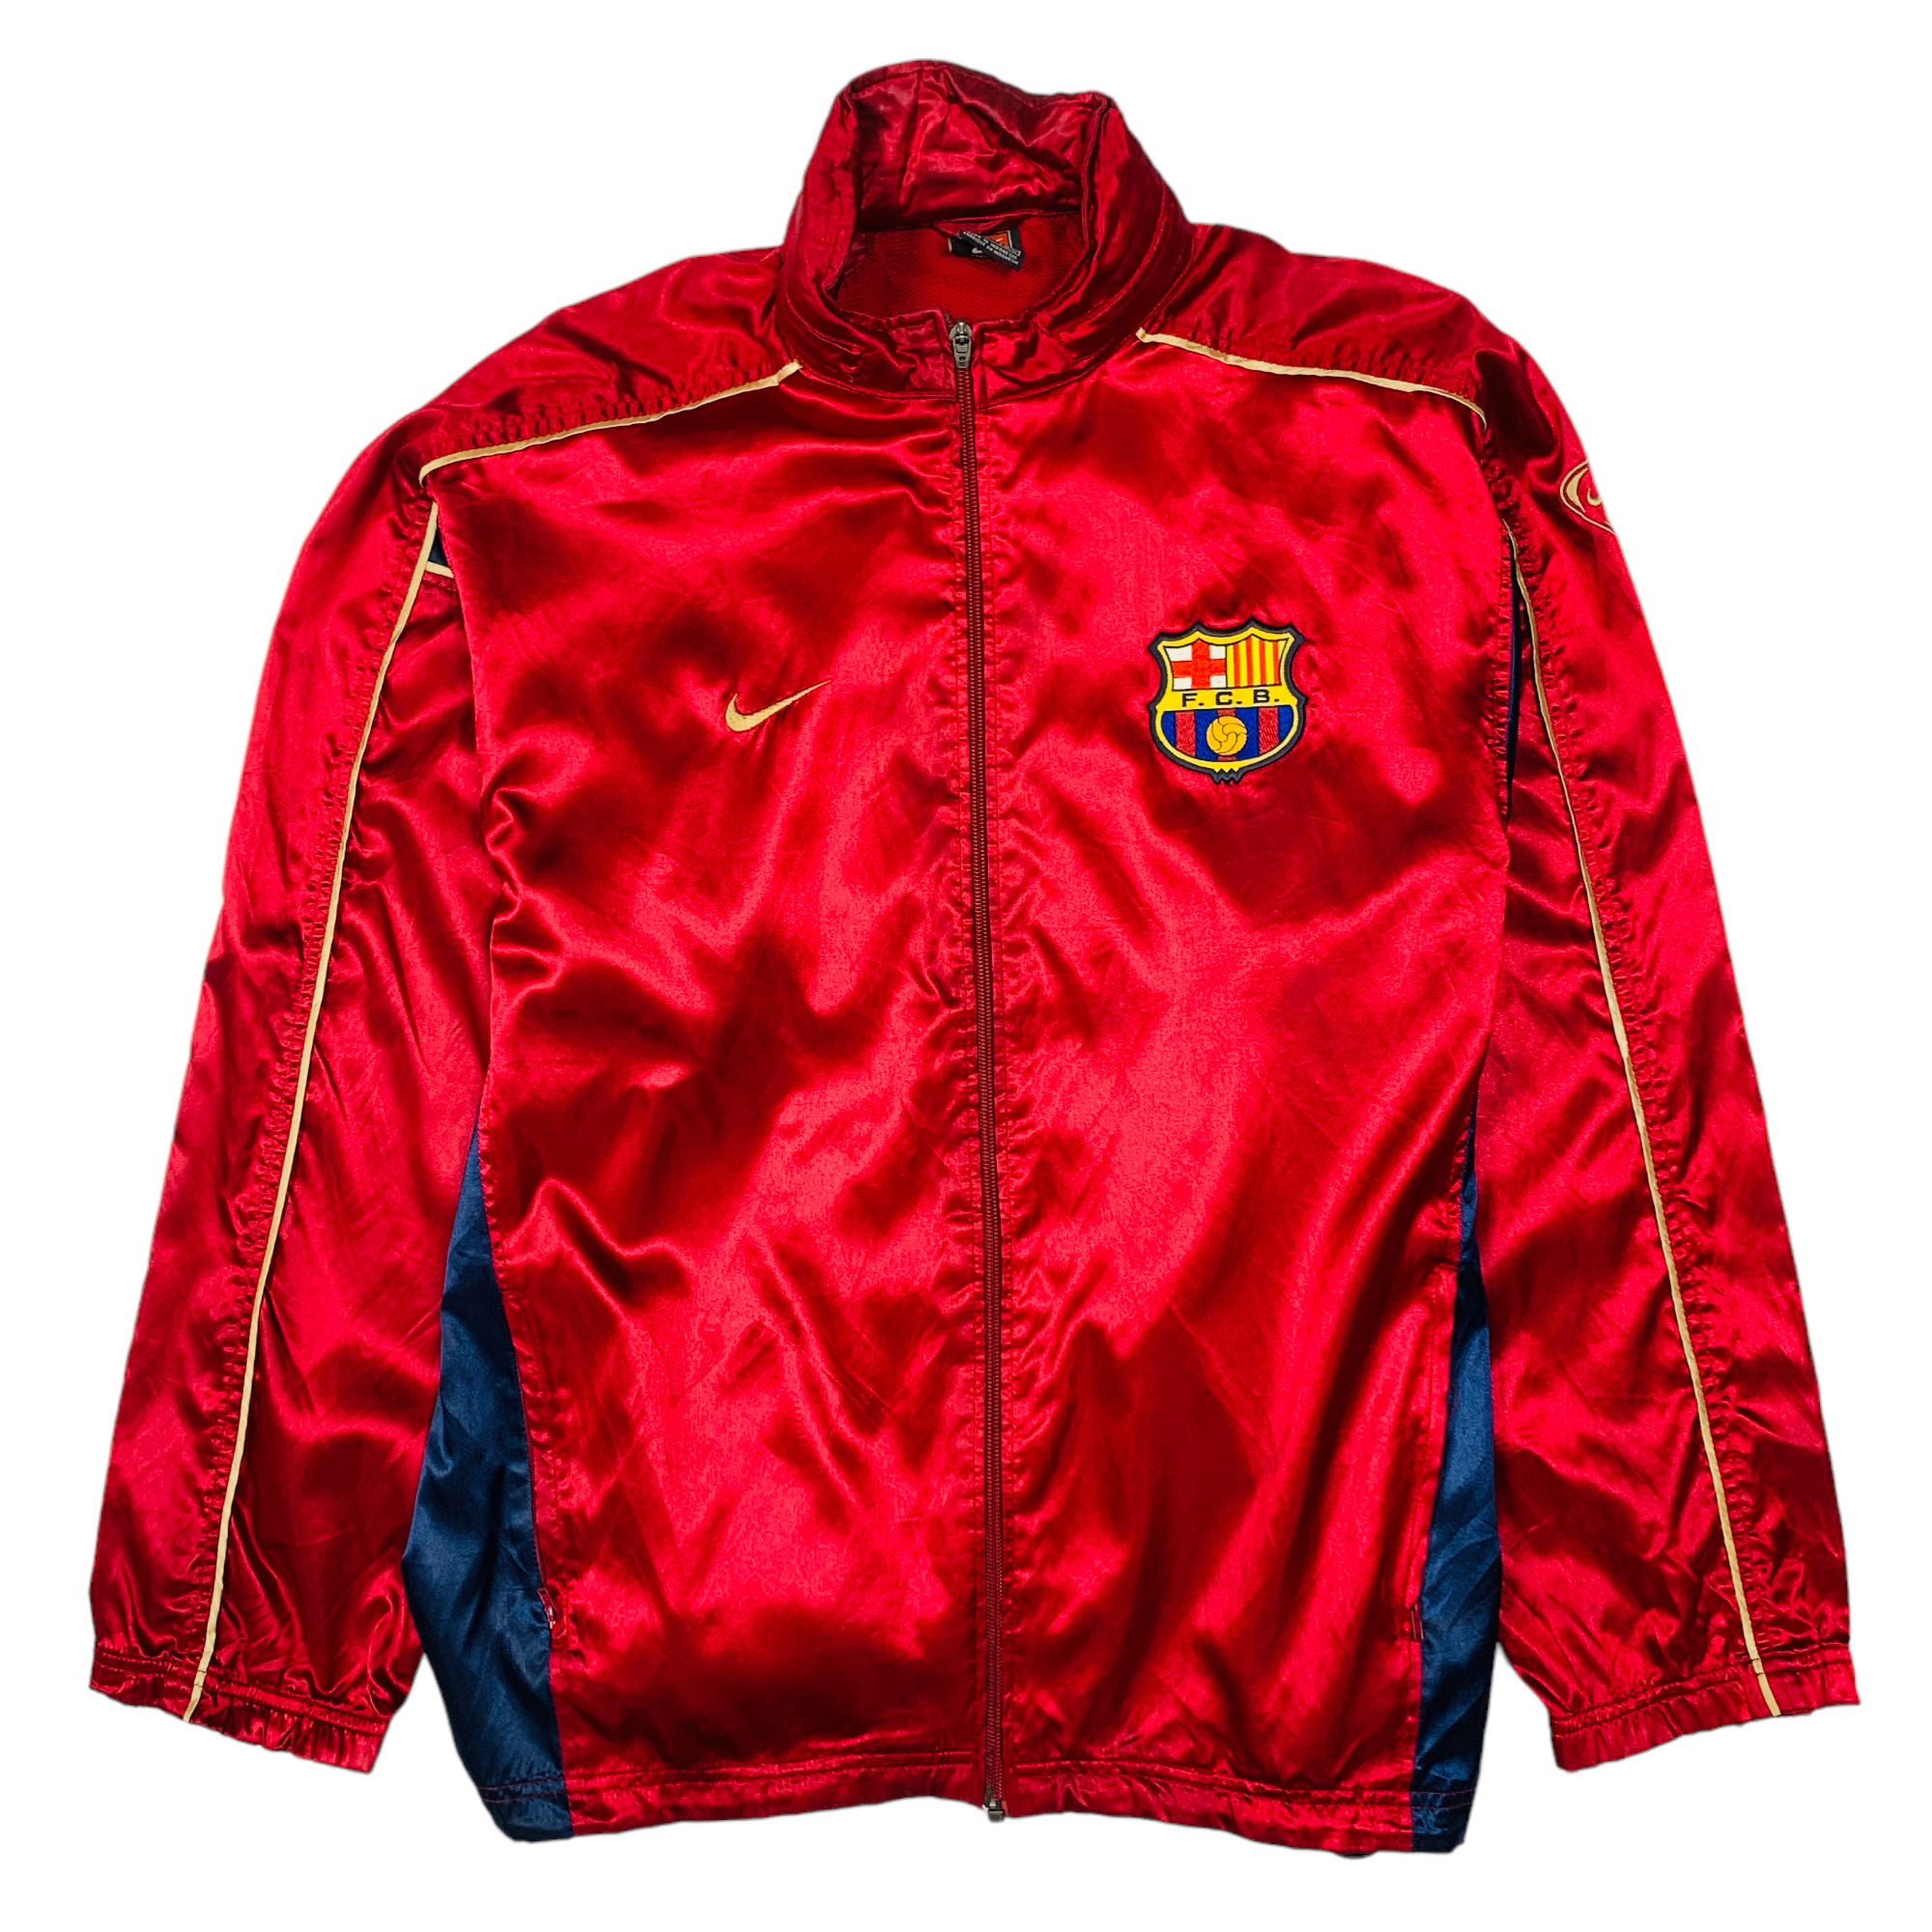 Barcelona 2001-02 Nike Training Jacket - Large